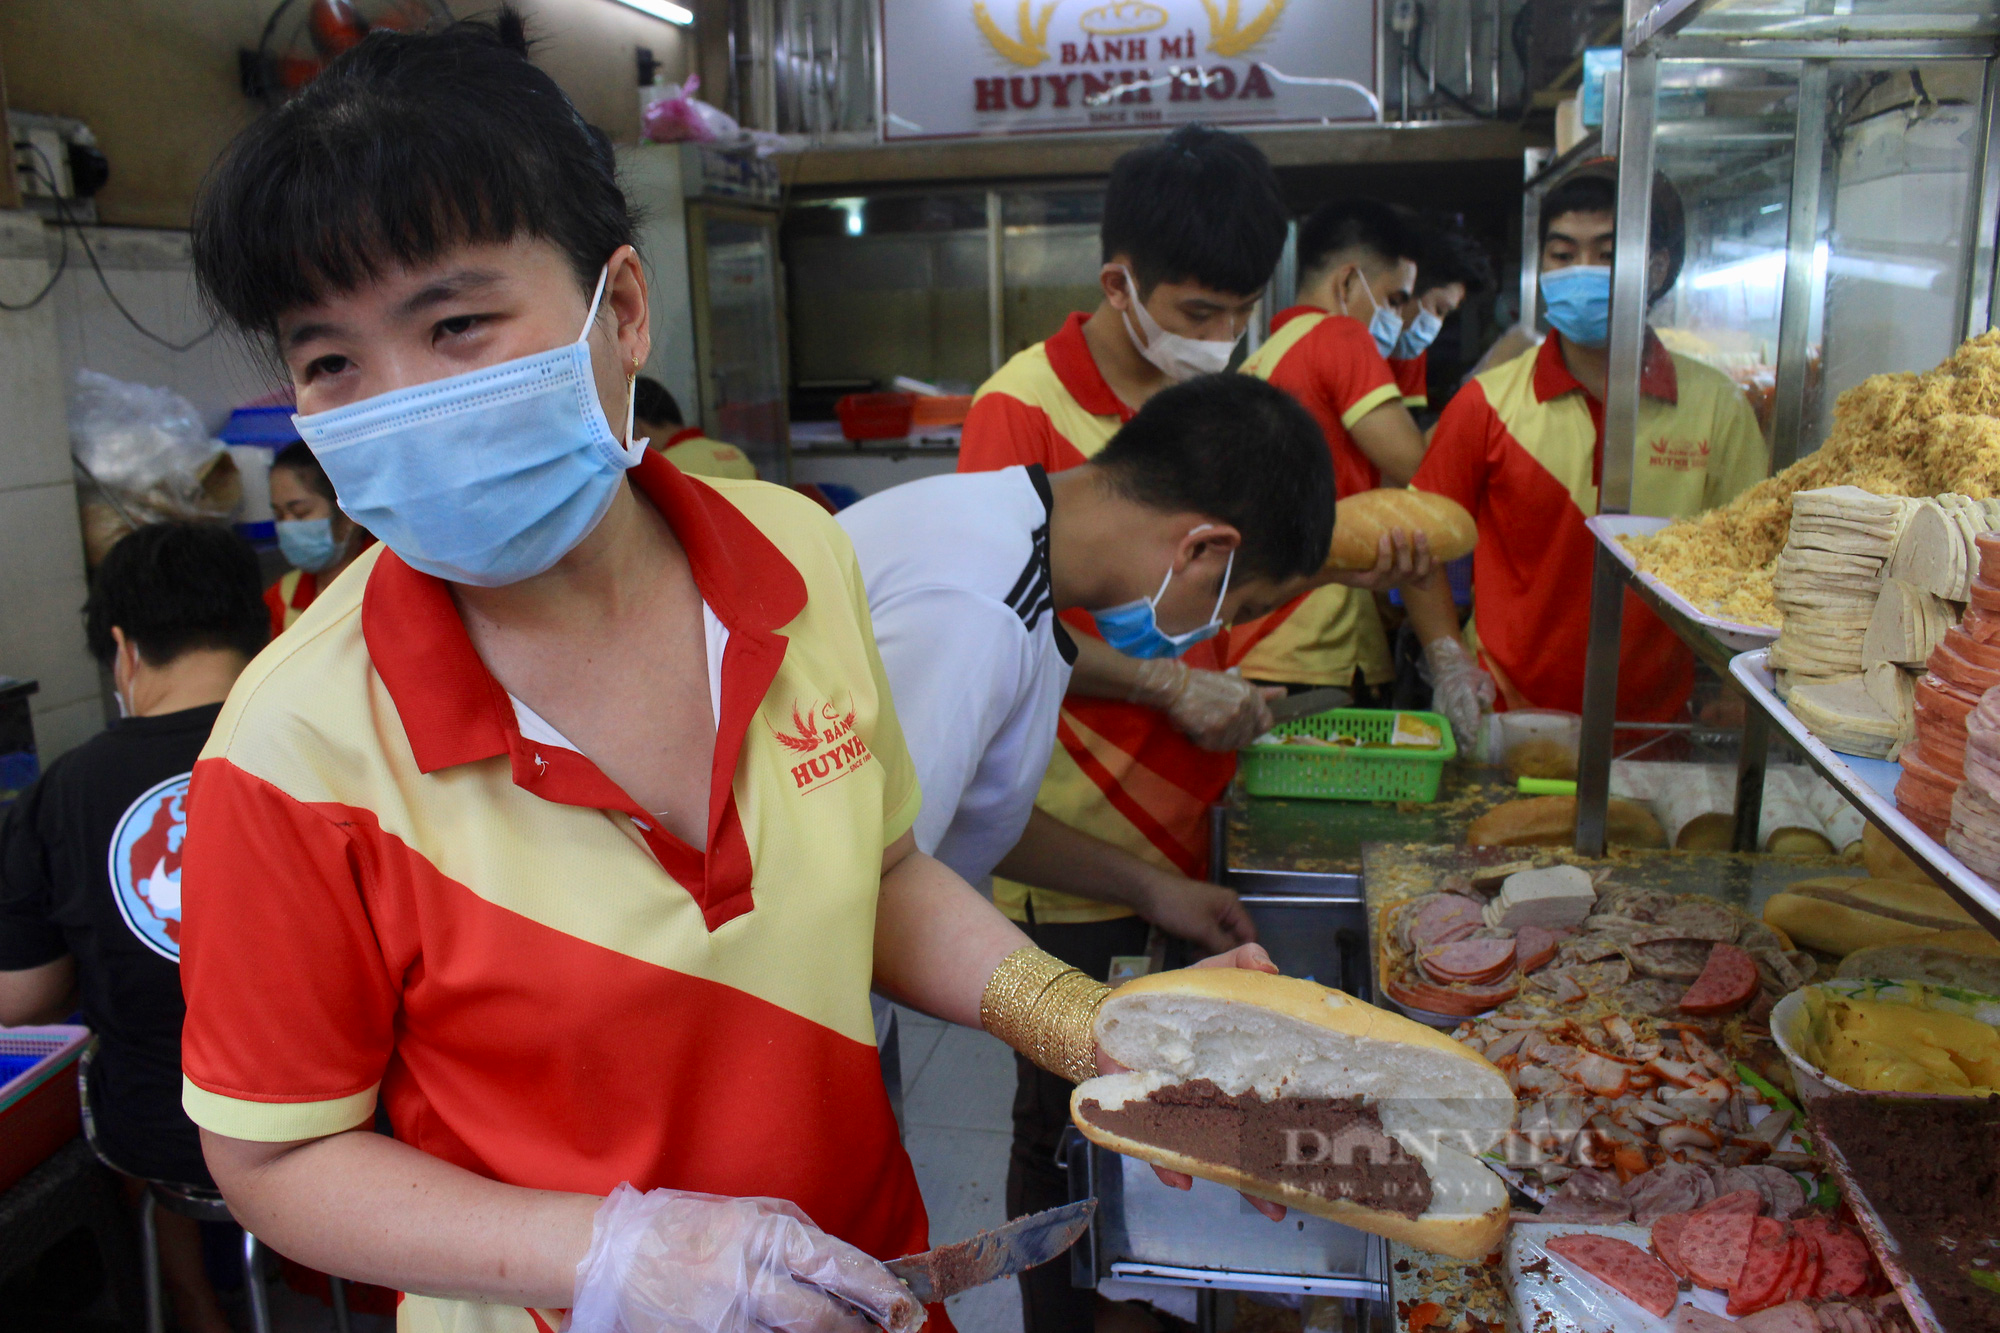 Bánh mì đắt nhất Sài Gòn 58.000 đồng/ổ có gì mà lúc nào cũng phải xếp hàng mới được ăn? - Ảnh 2.